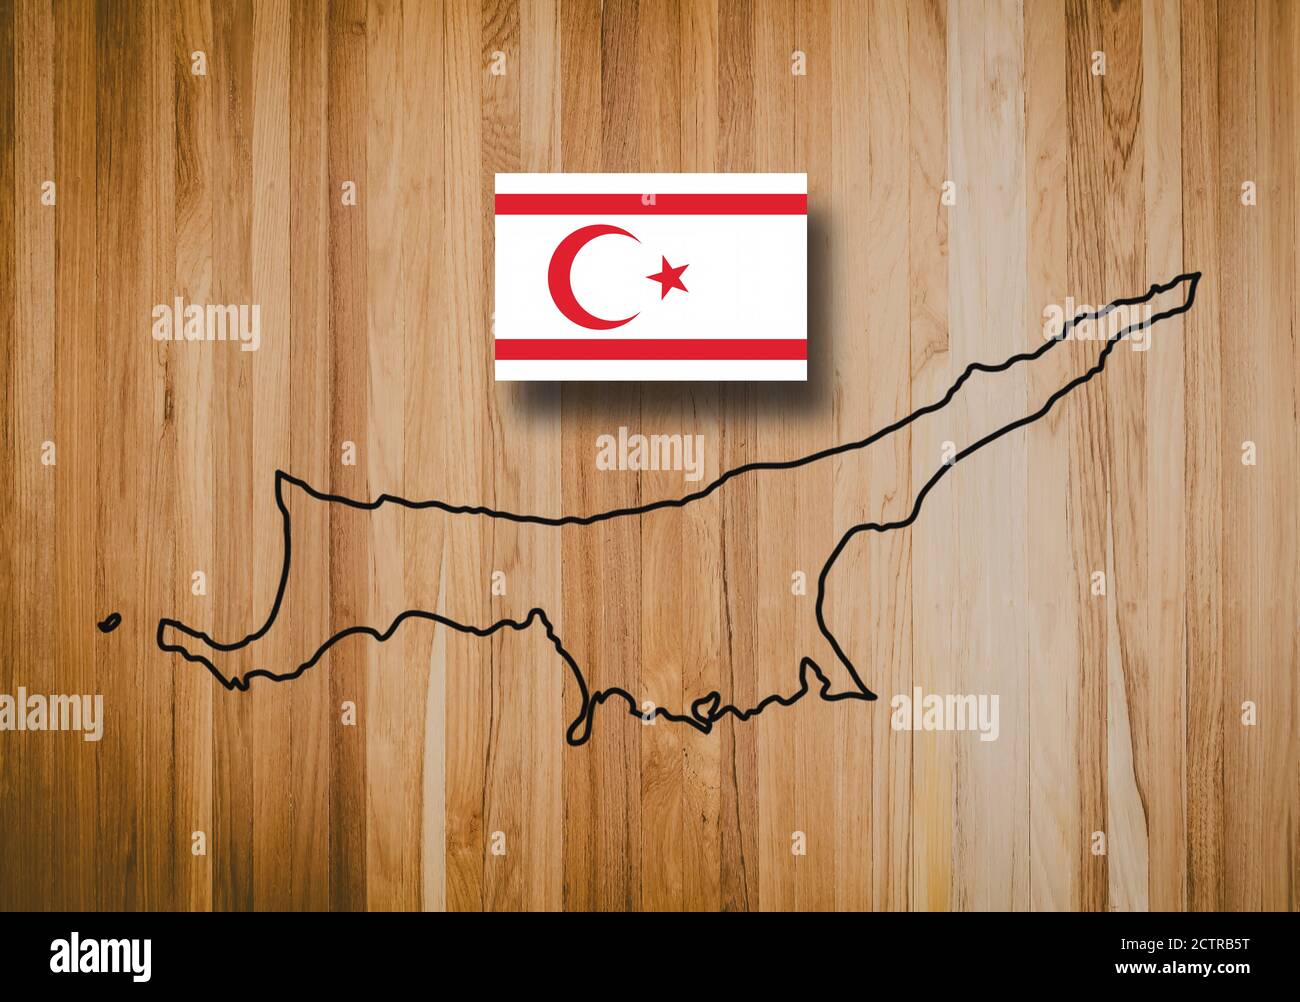 Carte et drapeau de Chypre du Nord, officiellement la République turque de Chypre du Nord. Pays d'Asie, sur fond de bois, illustration 3D Banque D'Images